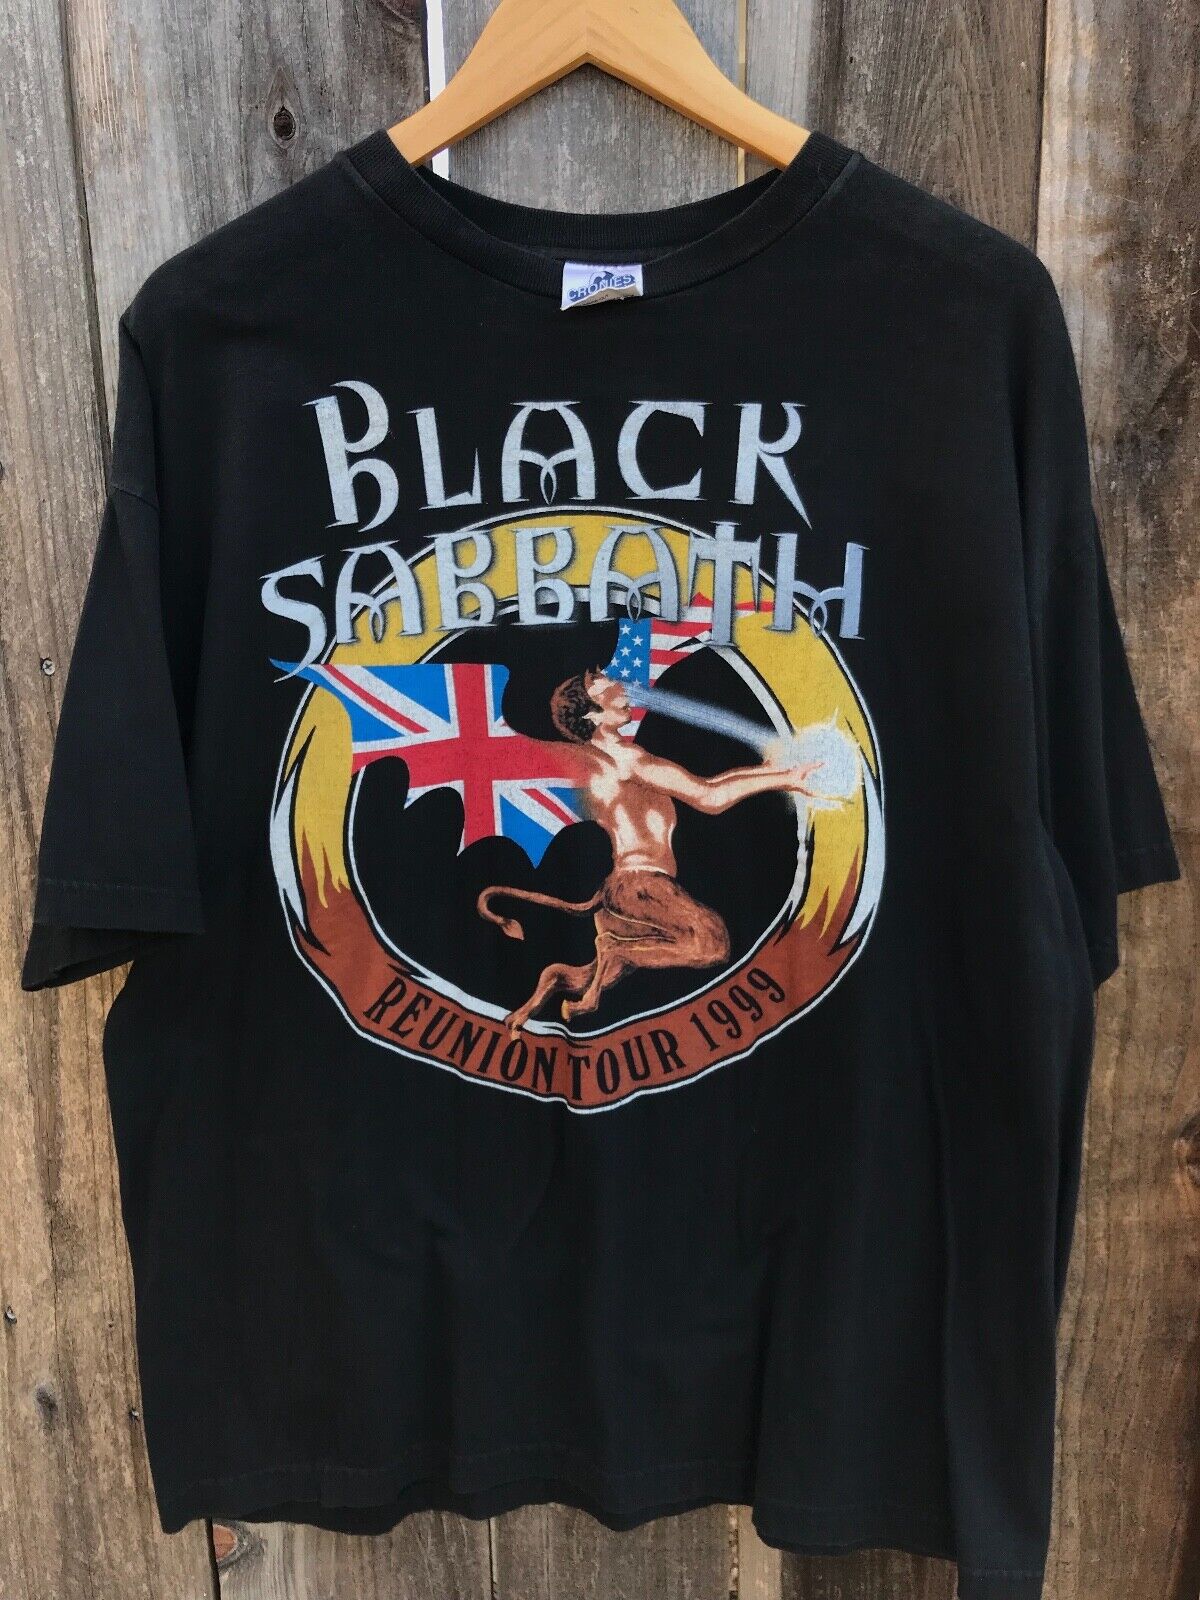 Vintage Black Sabbath 1999 Reunion Tour T-Shirt Size XL 90s 